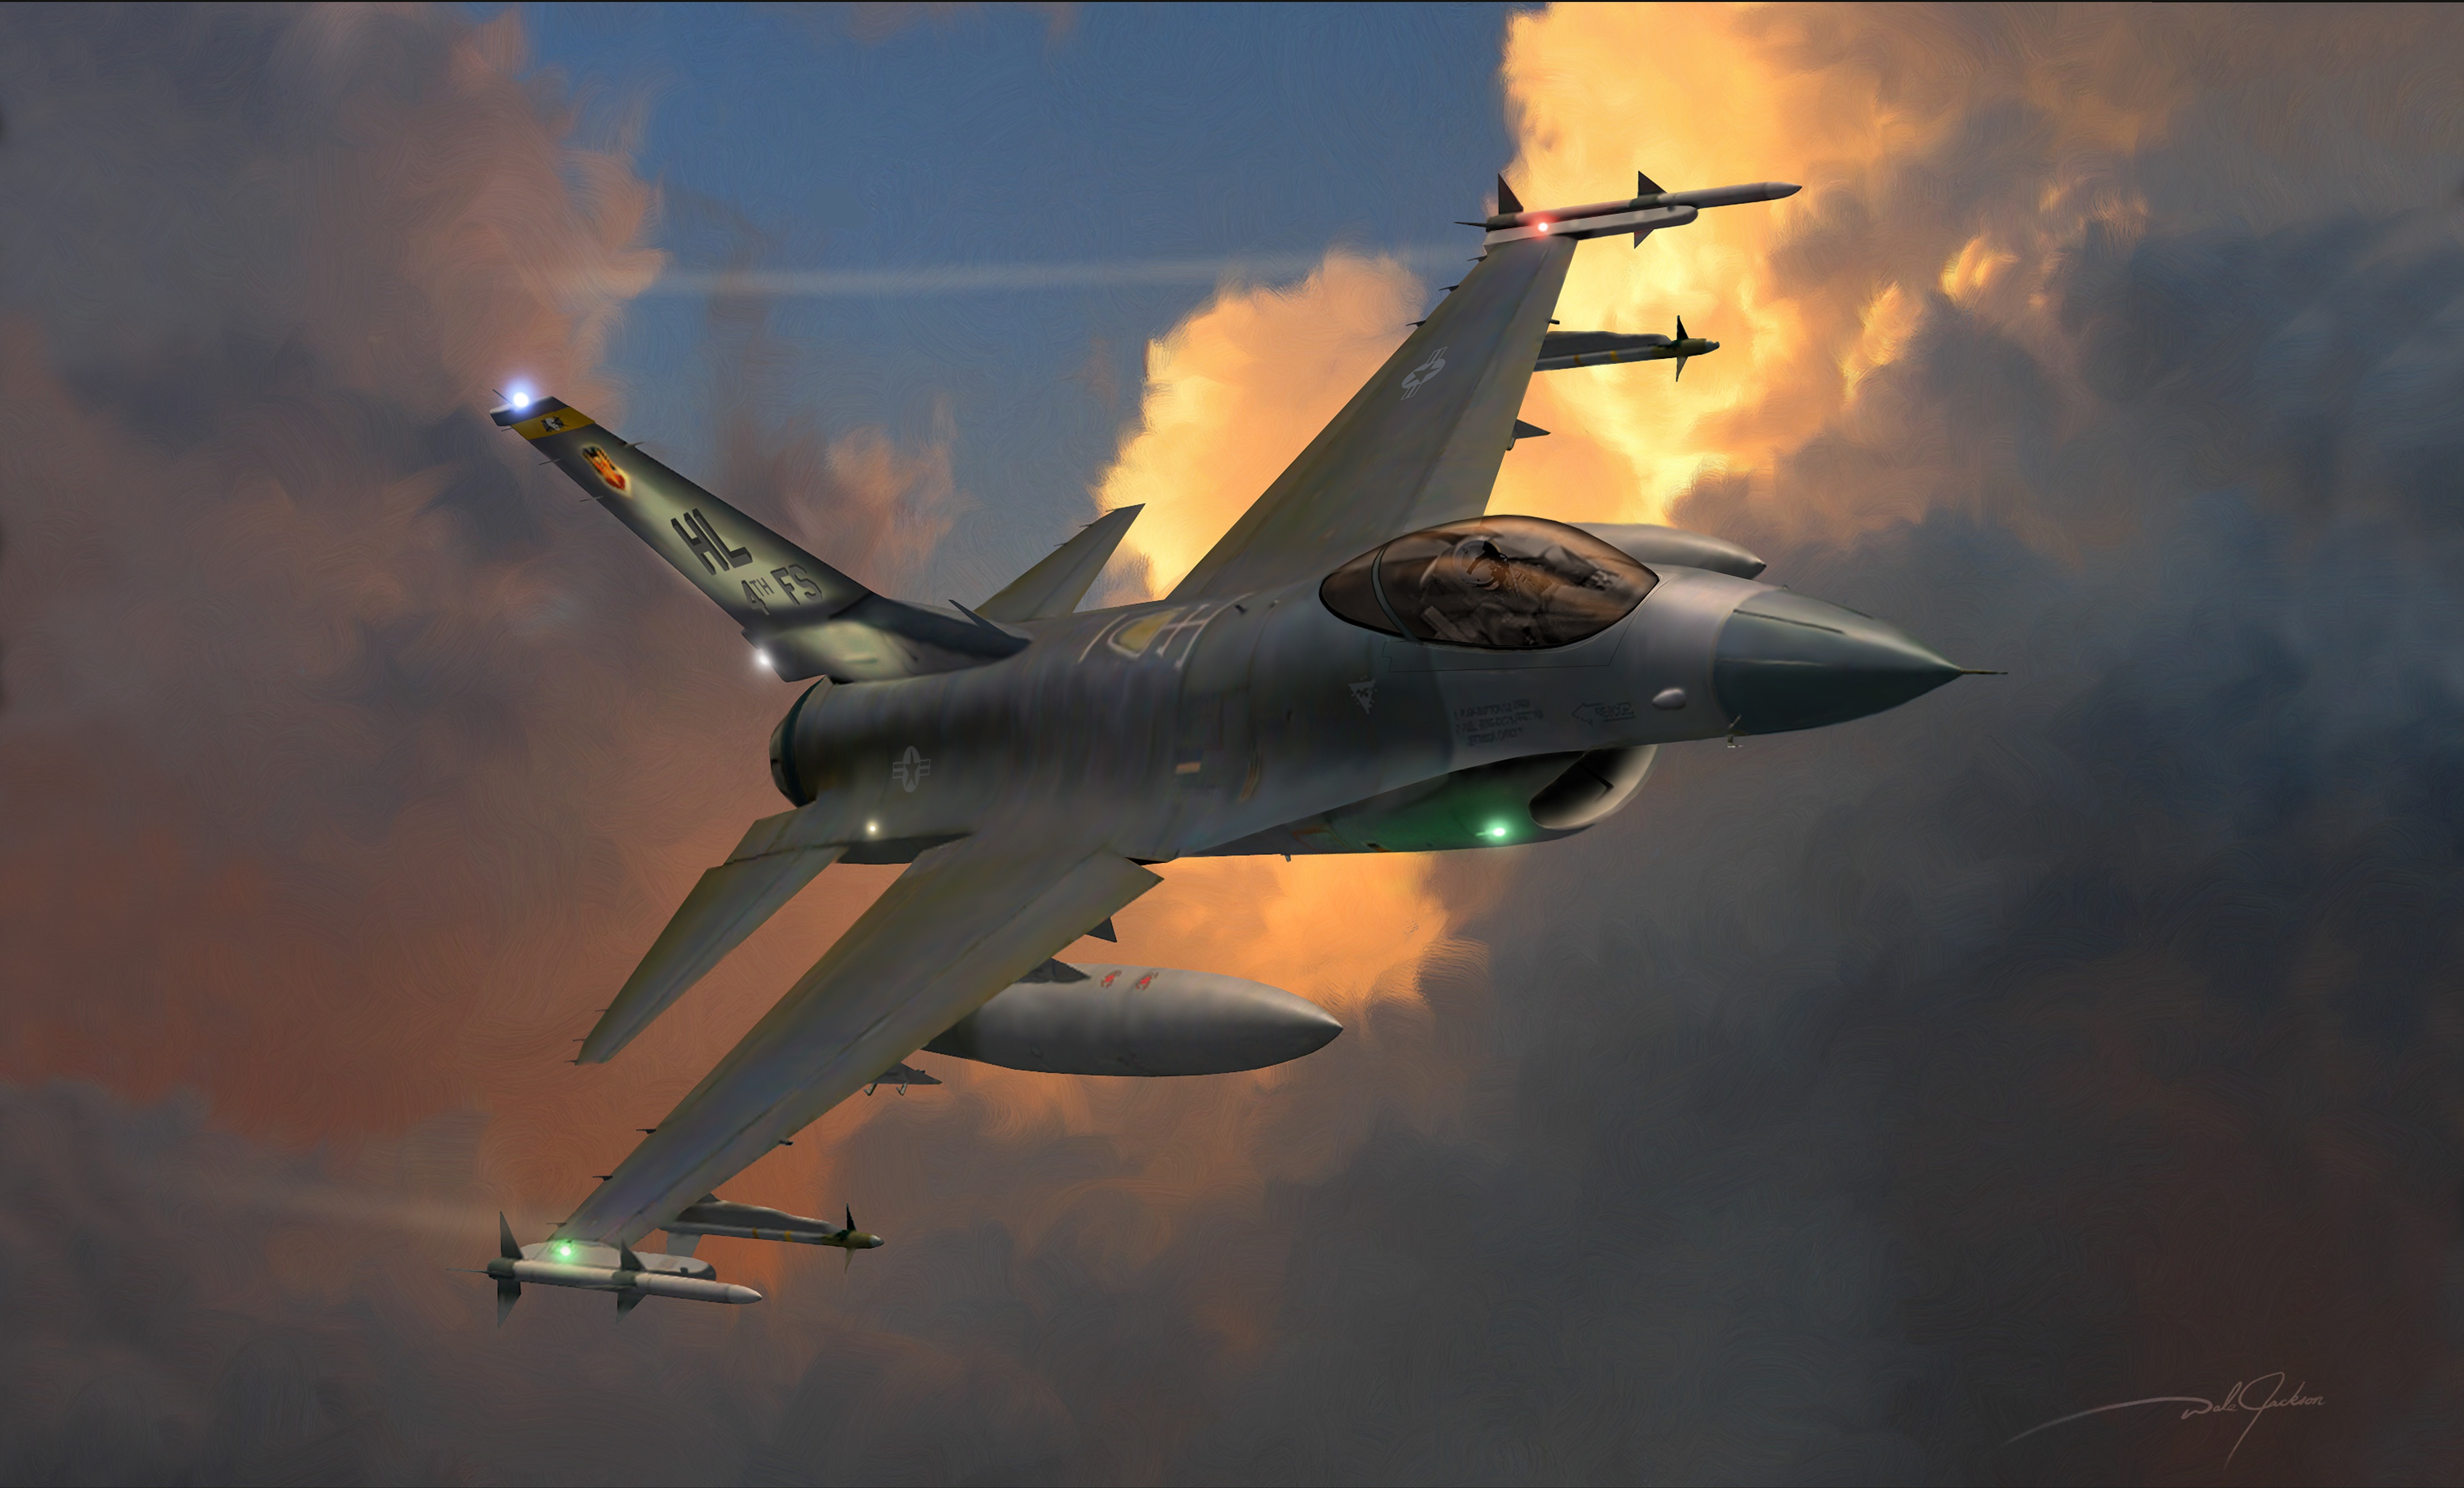 Descarga gratuita de fondo de pantalla para móvil de Militar, Aeronaves, Avión De Caza, General Dynamics F 16 Fighting Falcon, Avión De Guerra, Aviones De Combate.